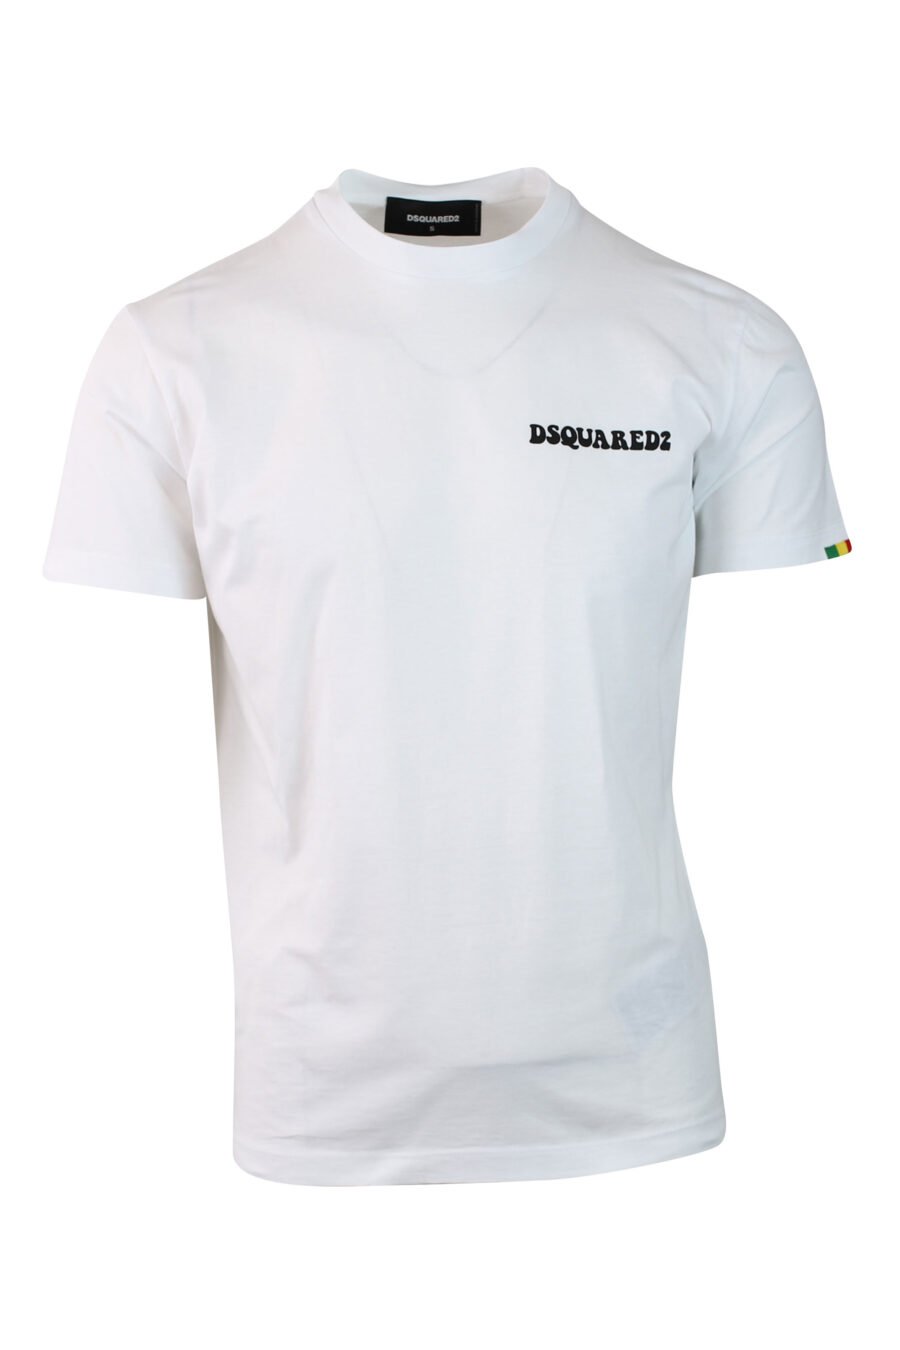 Camiseta blanca con minilogo - IMG 0135